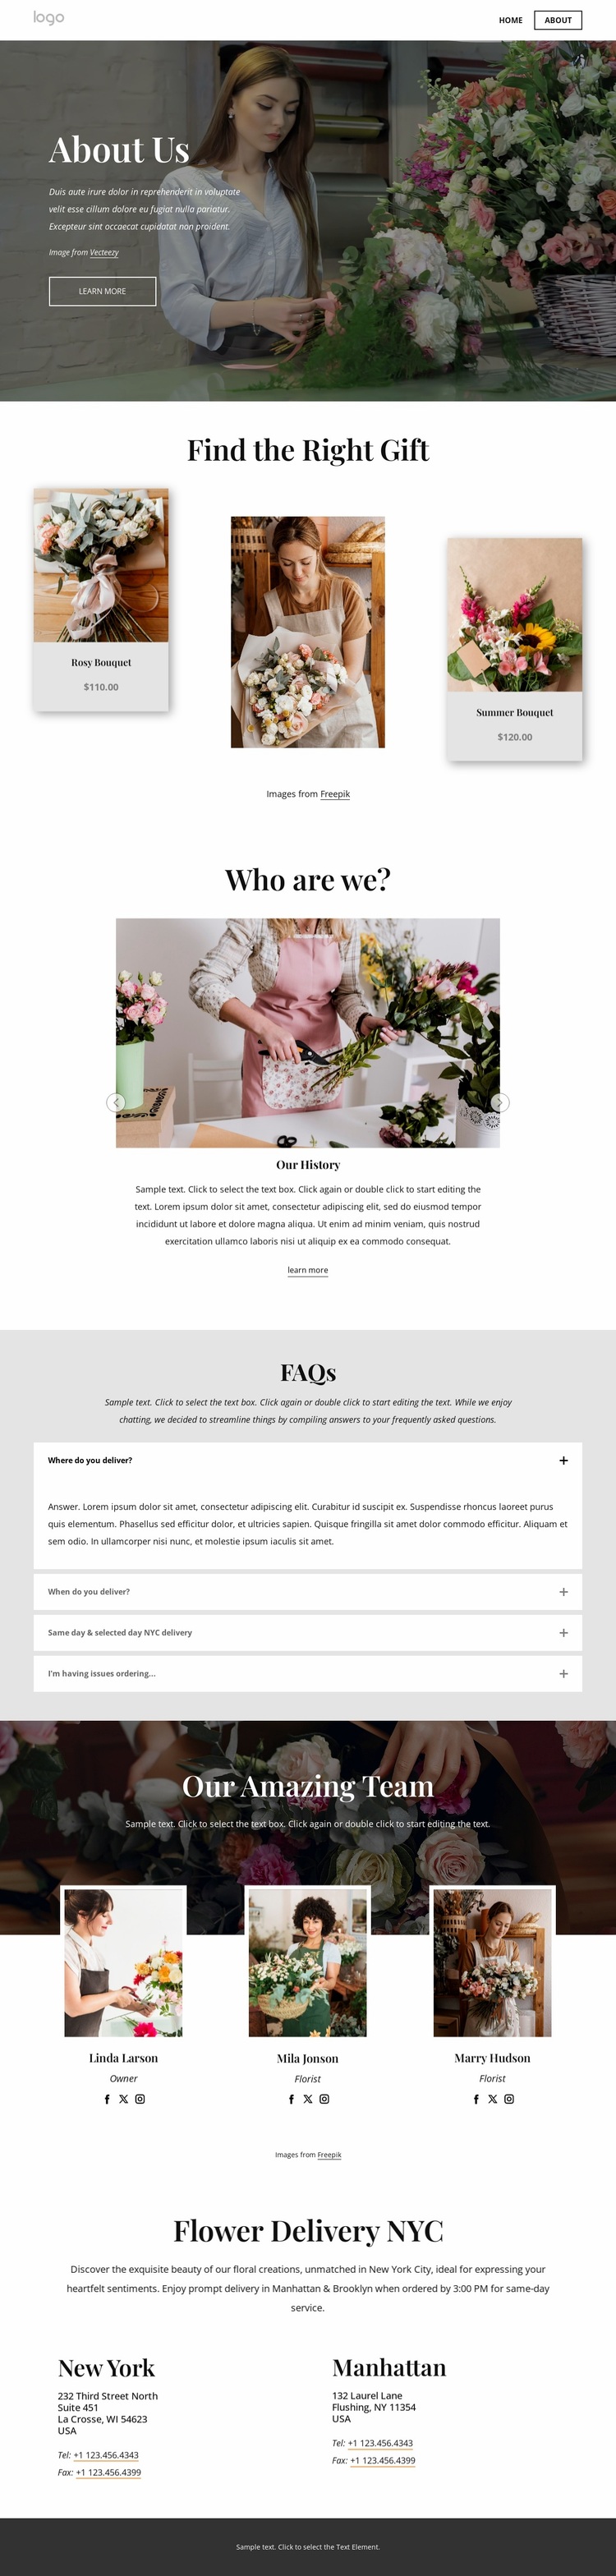 Same day flower delivery Website Design